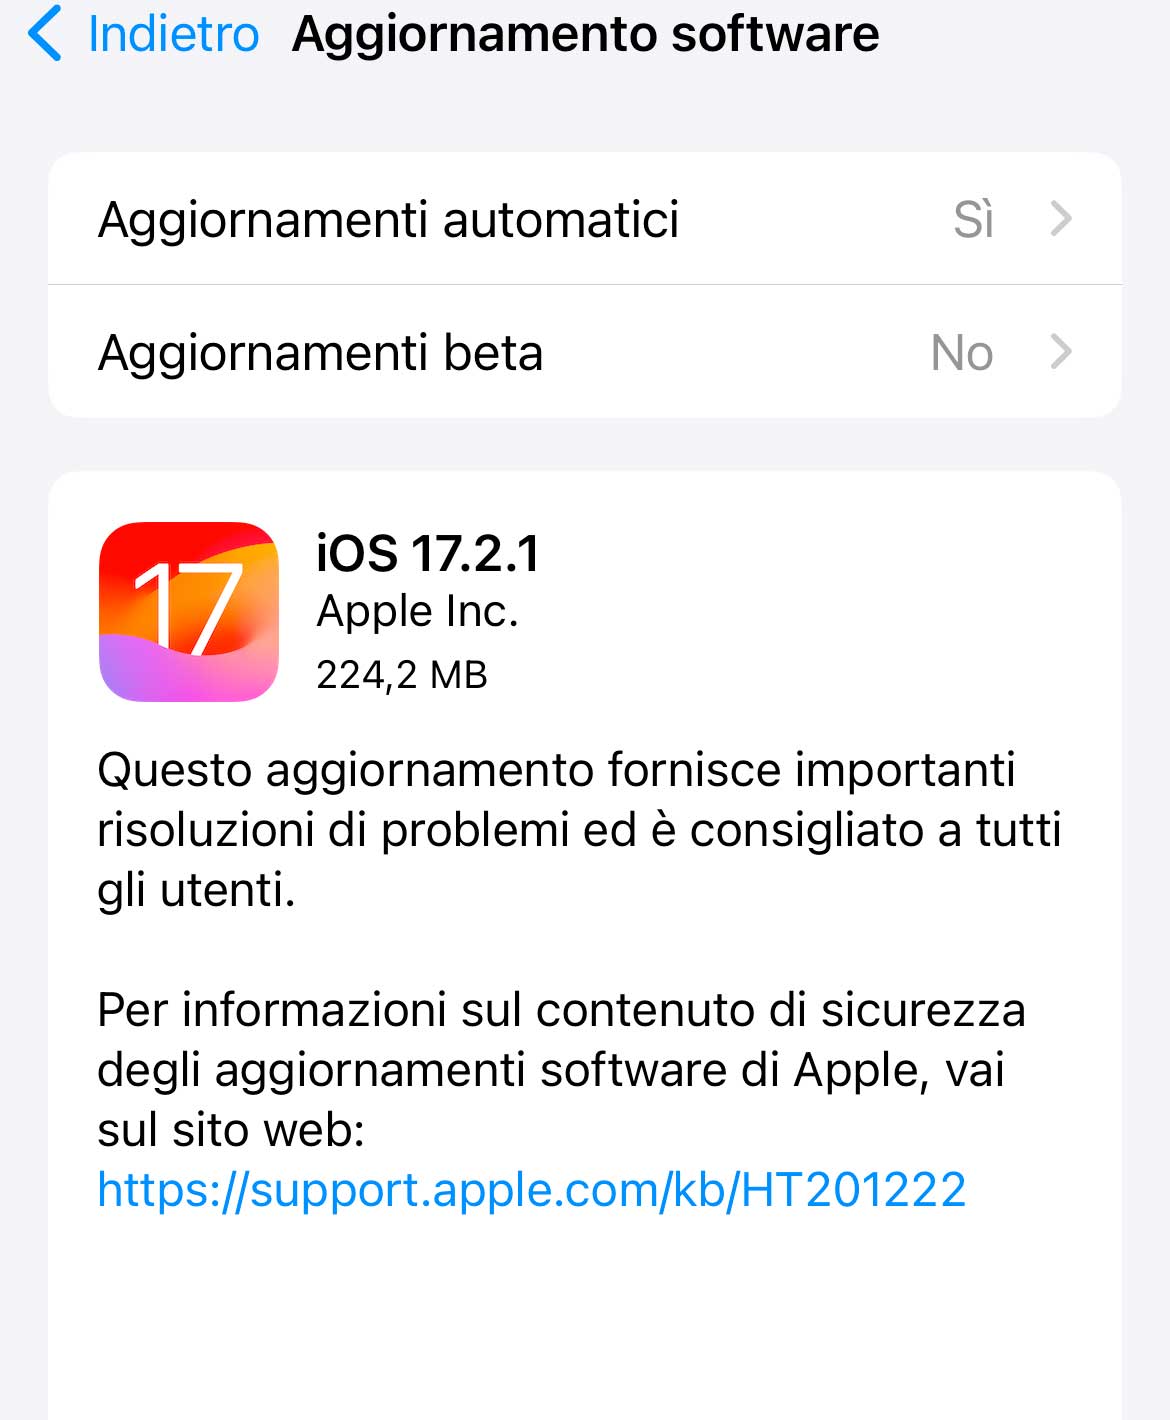 Mise à jour disponible pour iOS 17.2.1 avec correction de bugs